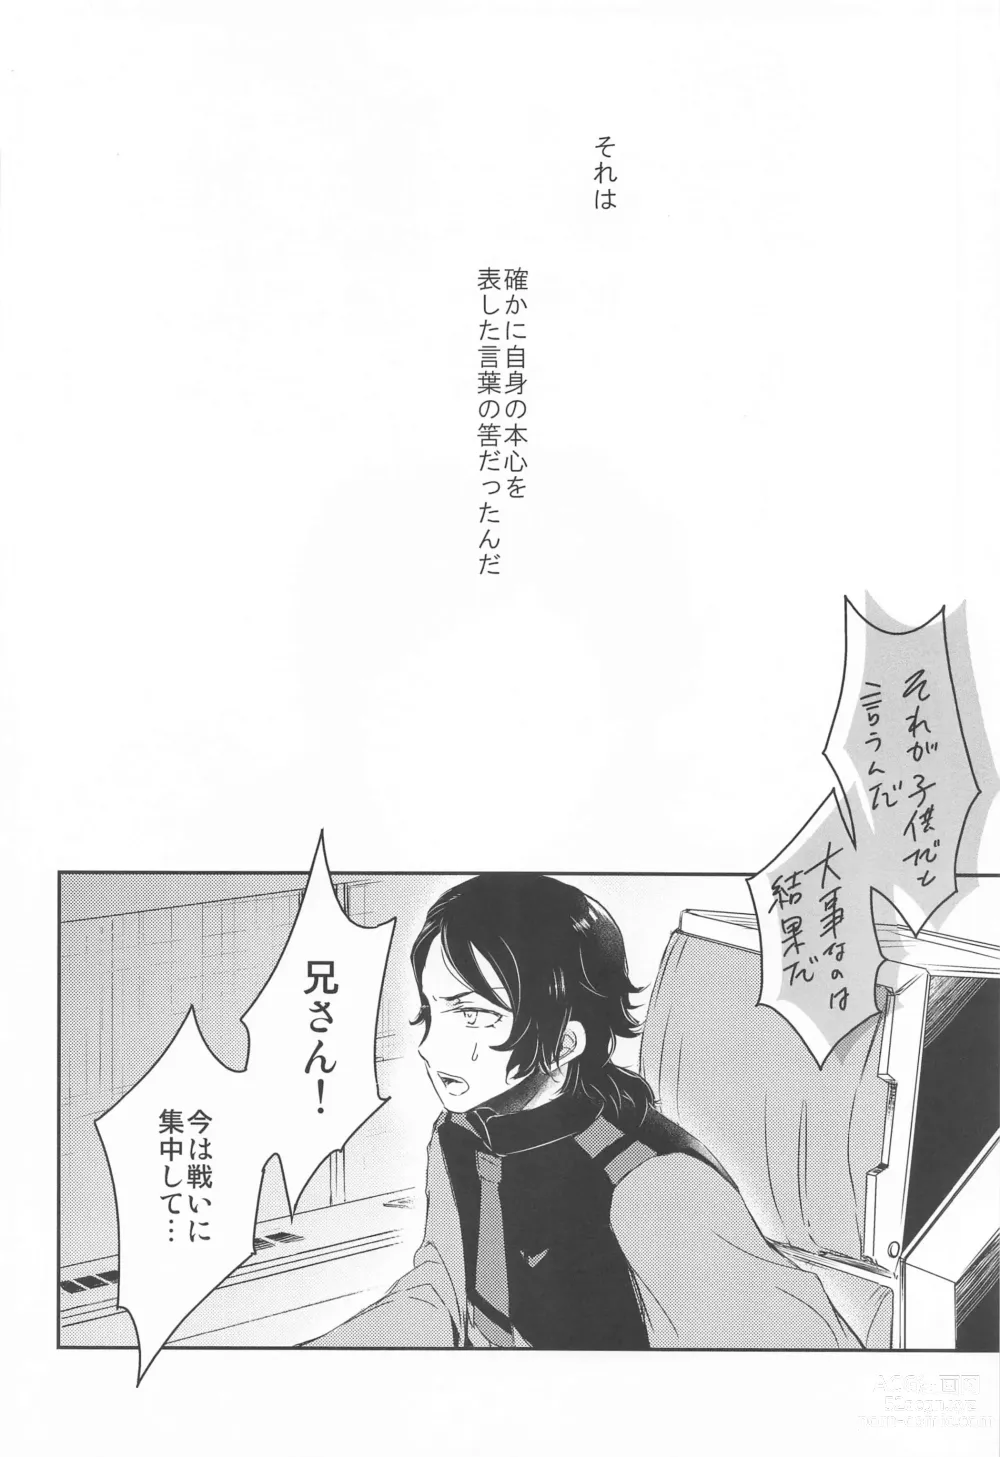 Page 21 of doujinshi Ai o Shiranai Kodomo-tachi  - Loveless Children